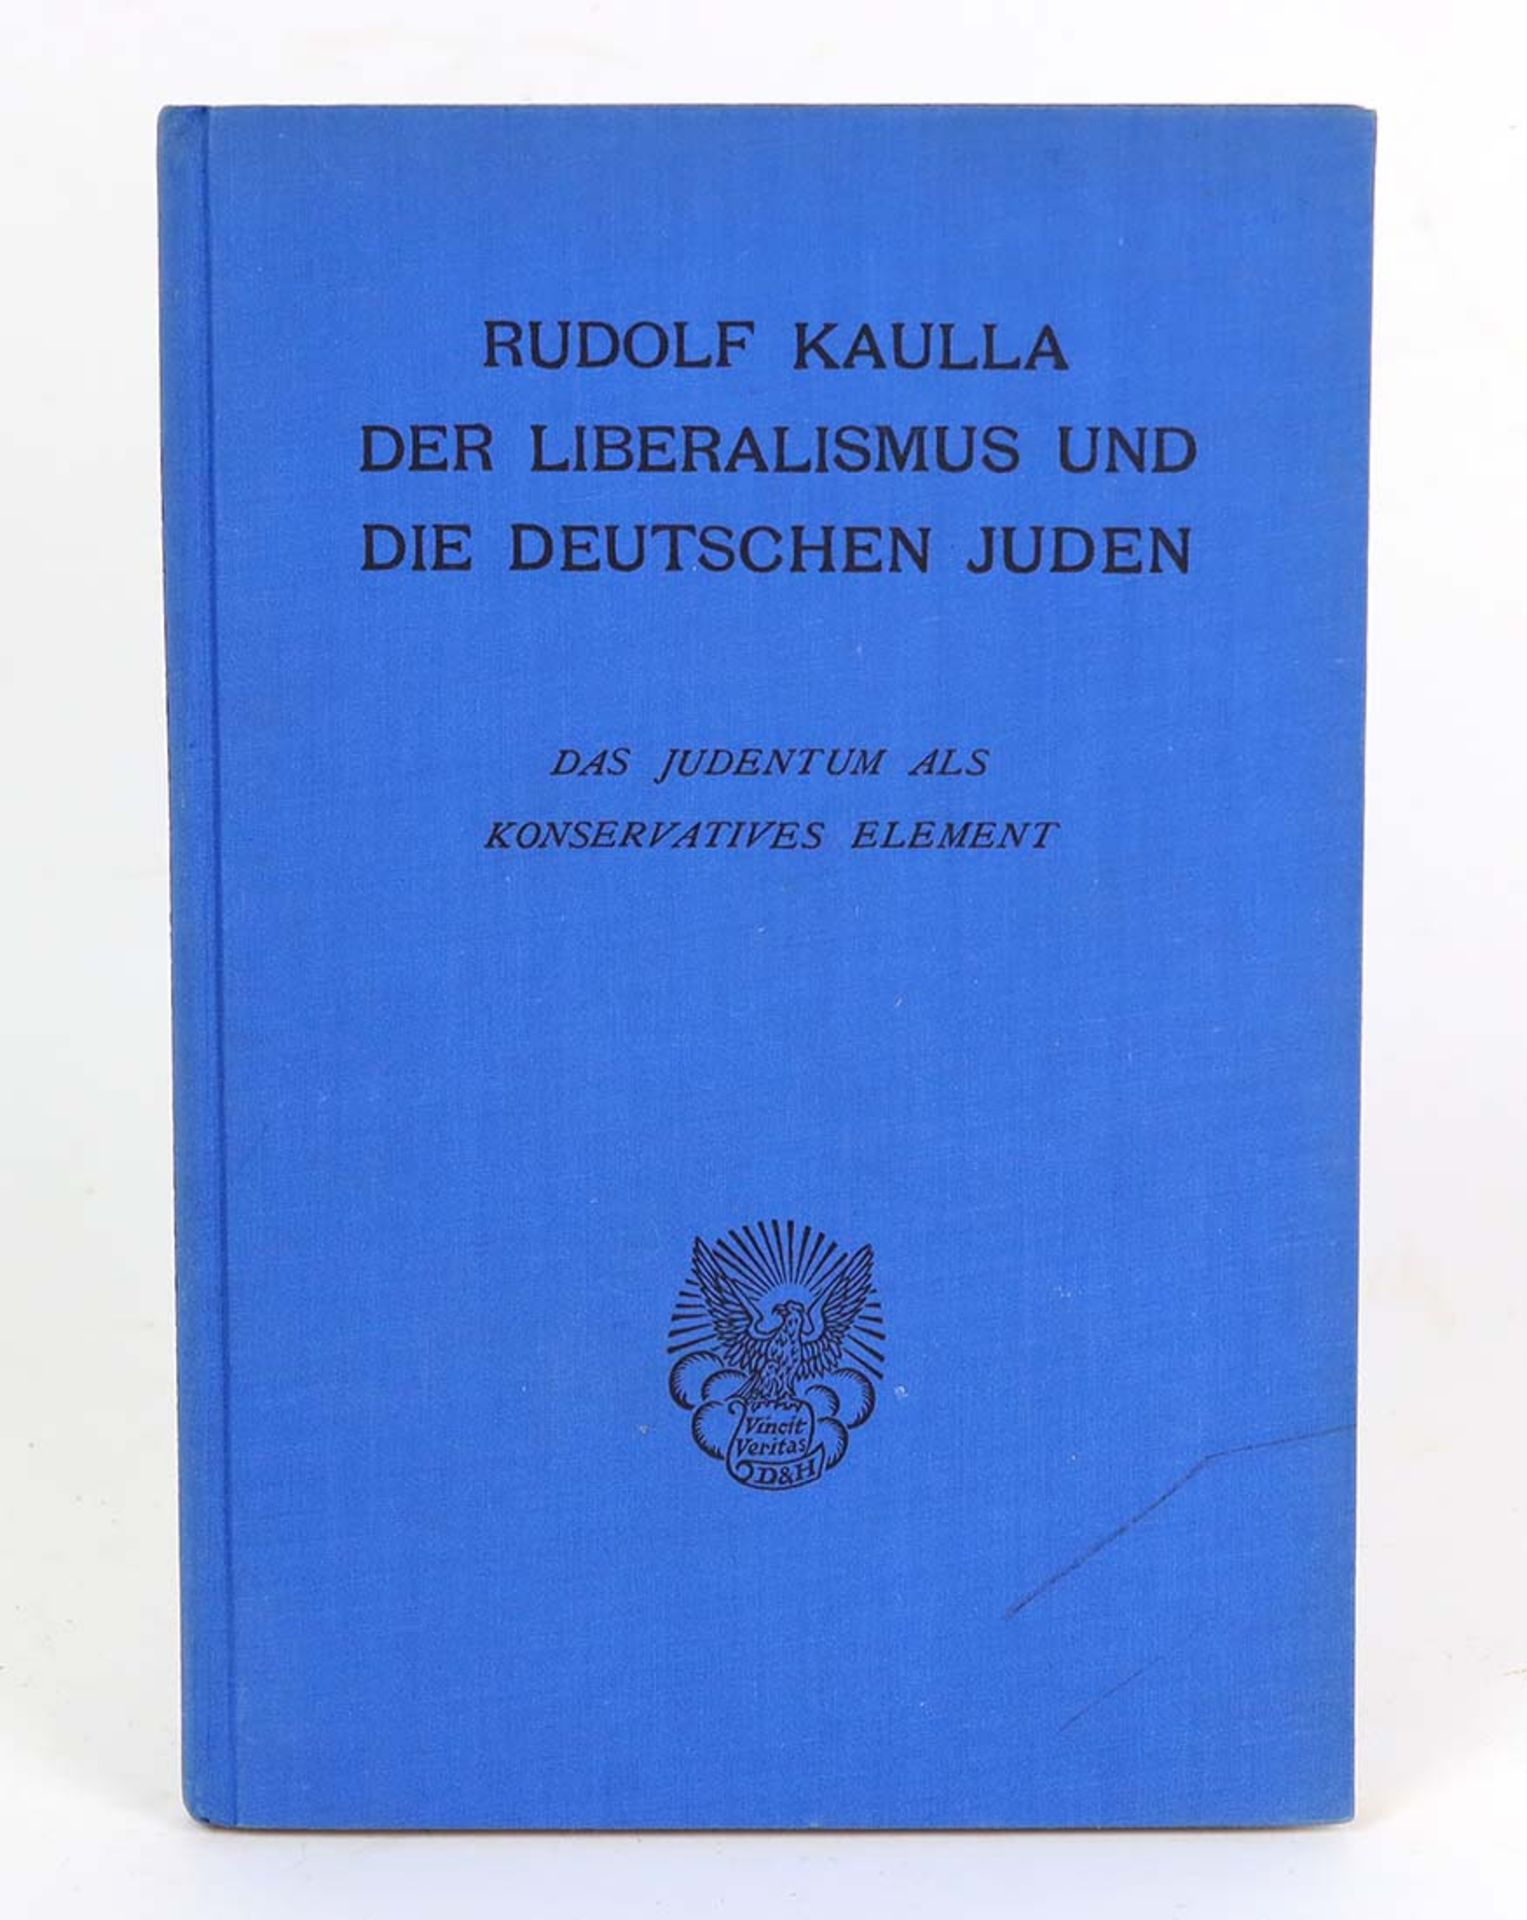 Der Liberalismus und die deutschen JudenDas Judentum als konservatives Element v. Rudo